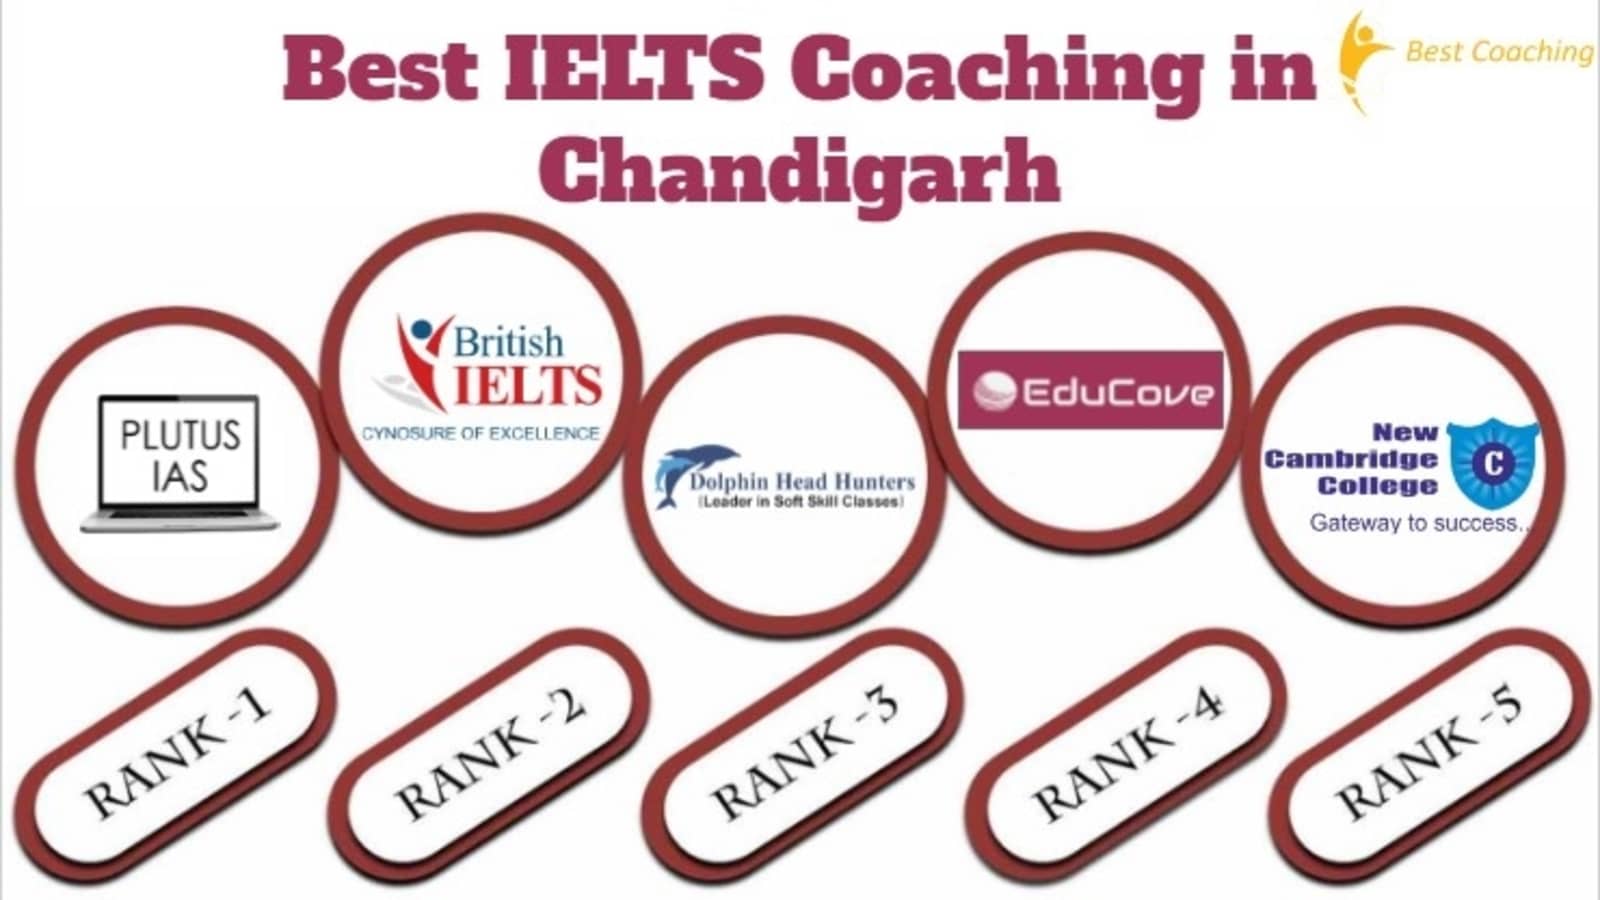 Best IELTS Coaching in Chandigarh